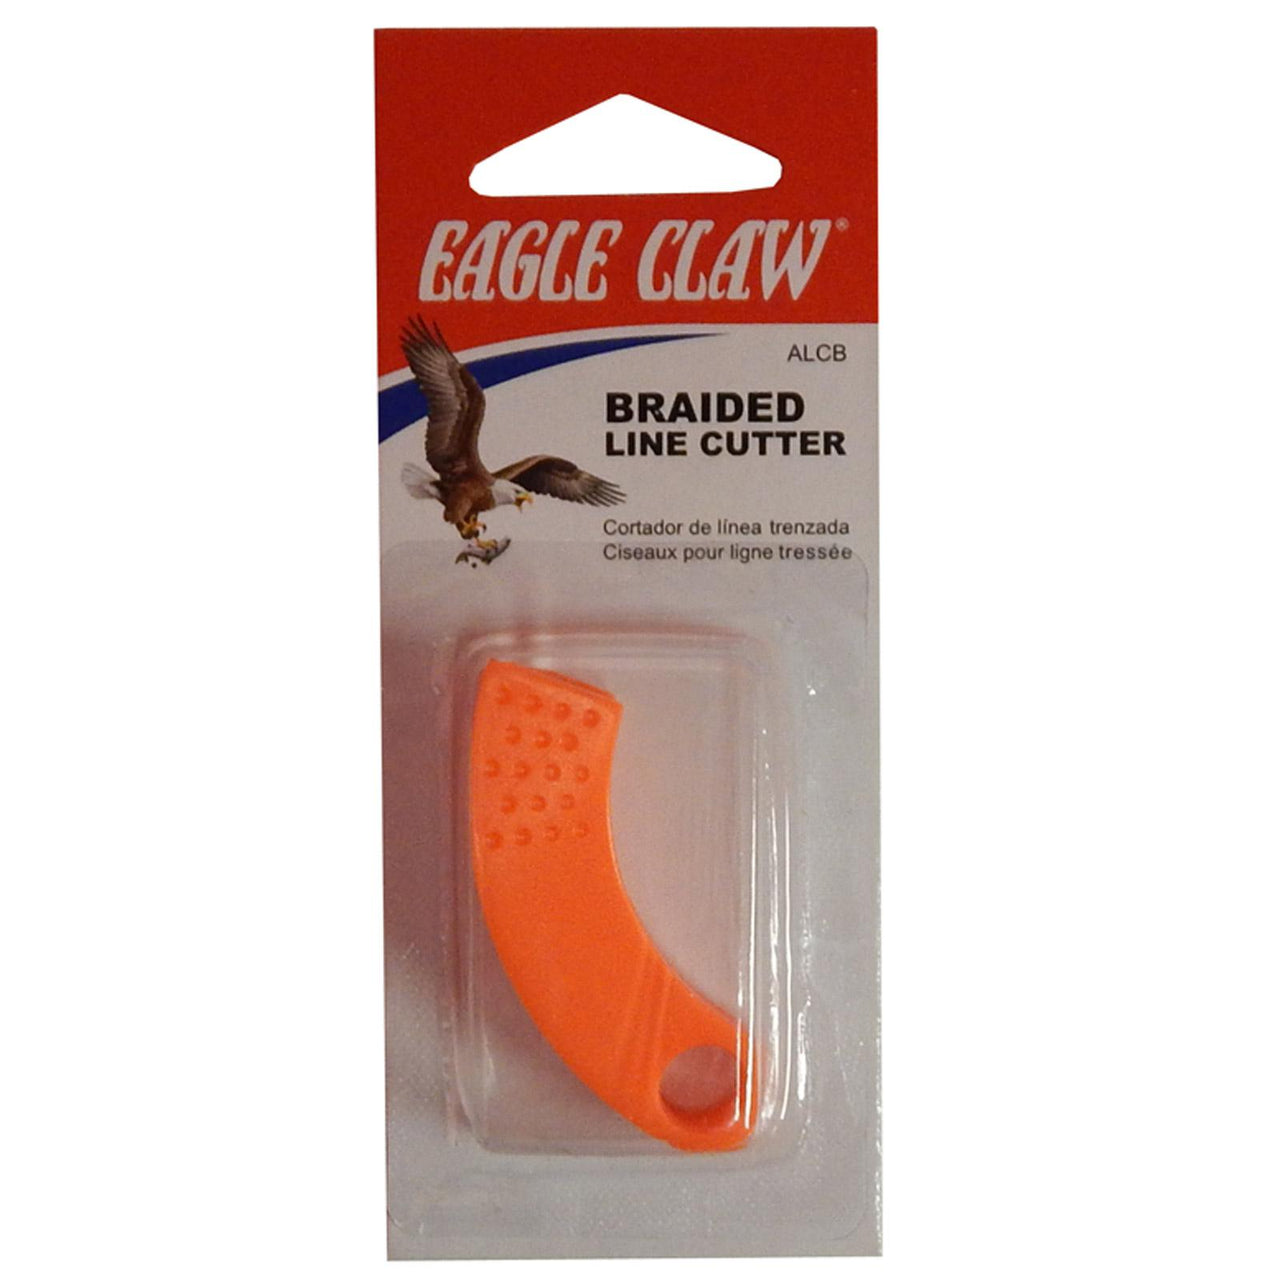 Eagle Claw braided line cutter